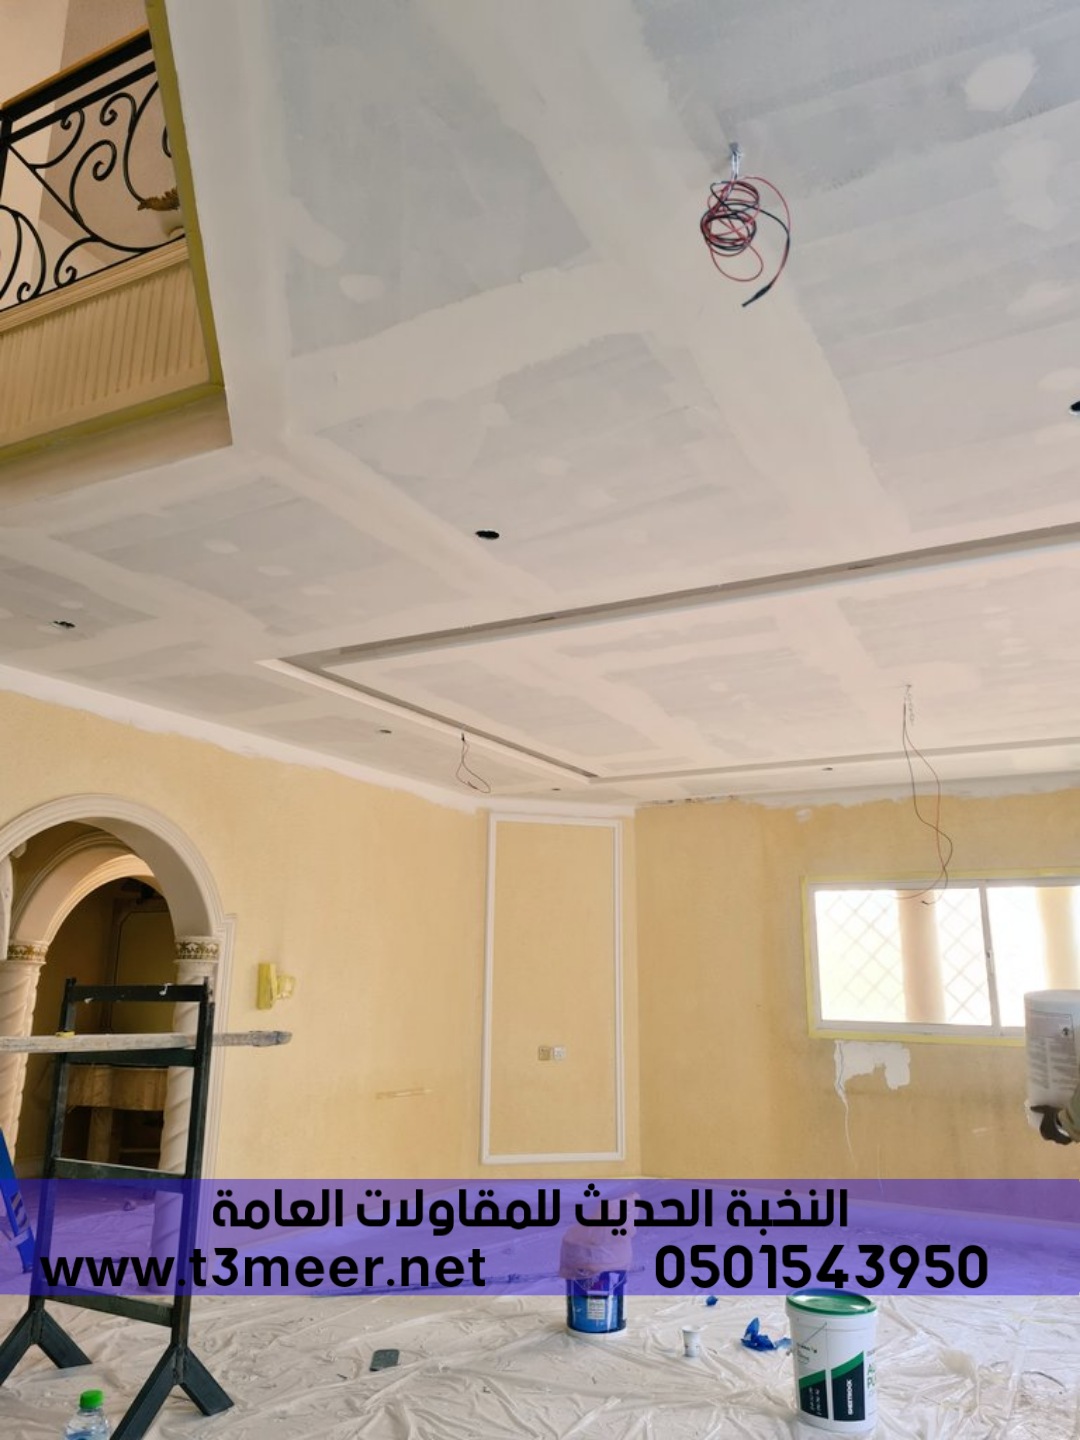 بناء عظم بالمواد او بدون في الرياض , 0501543950 P_2431ff2k93